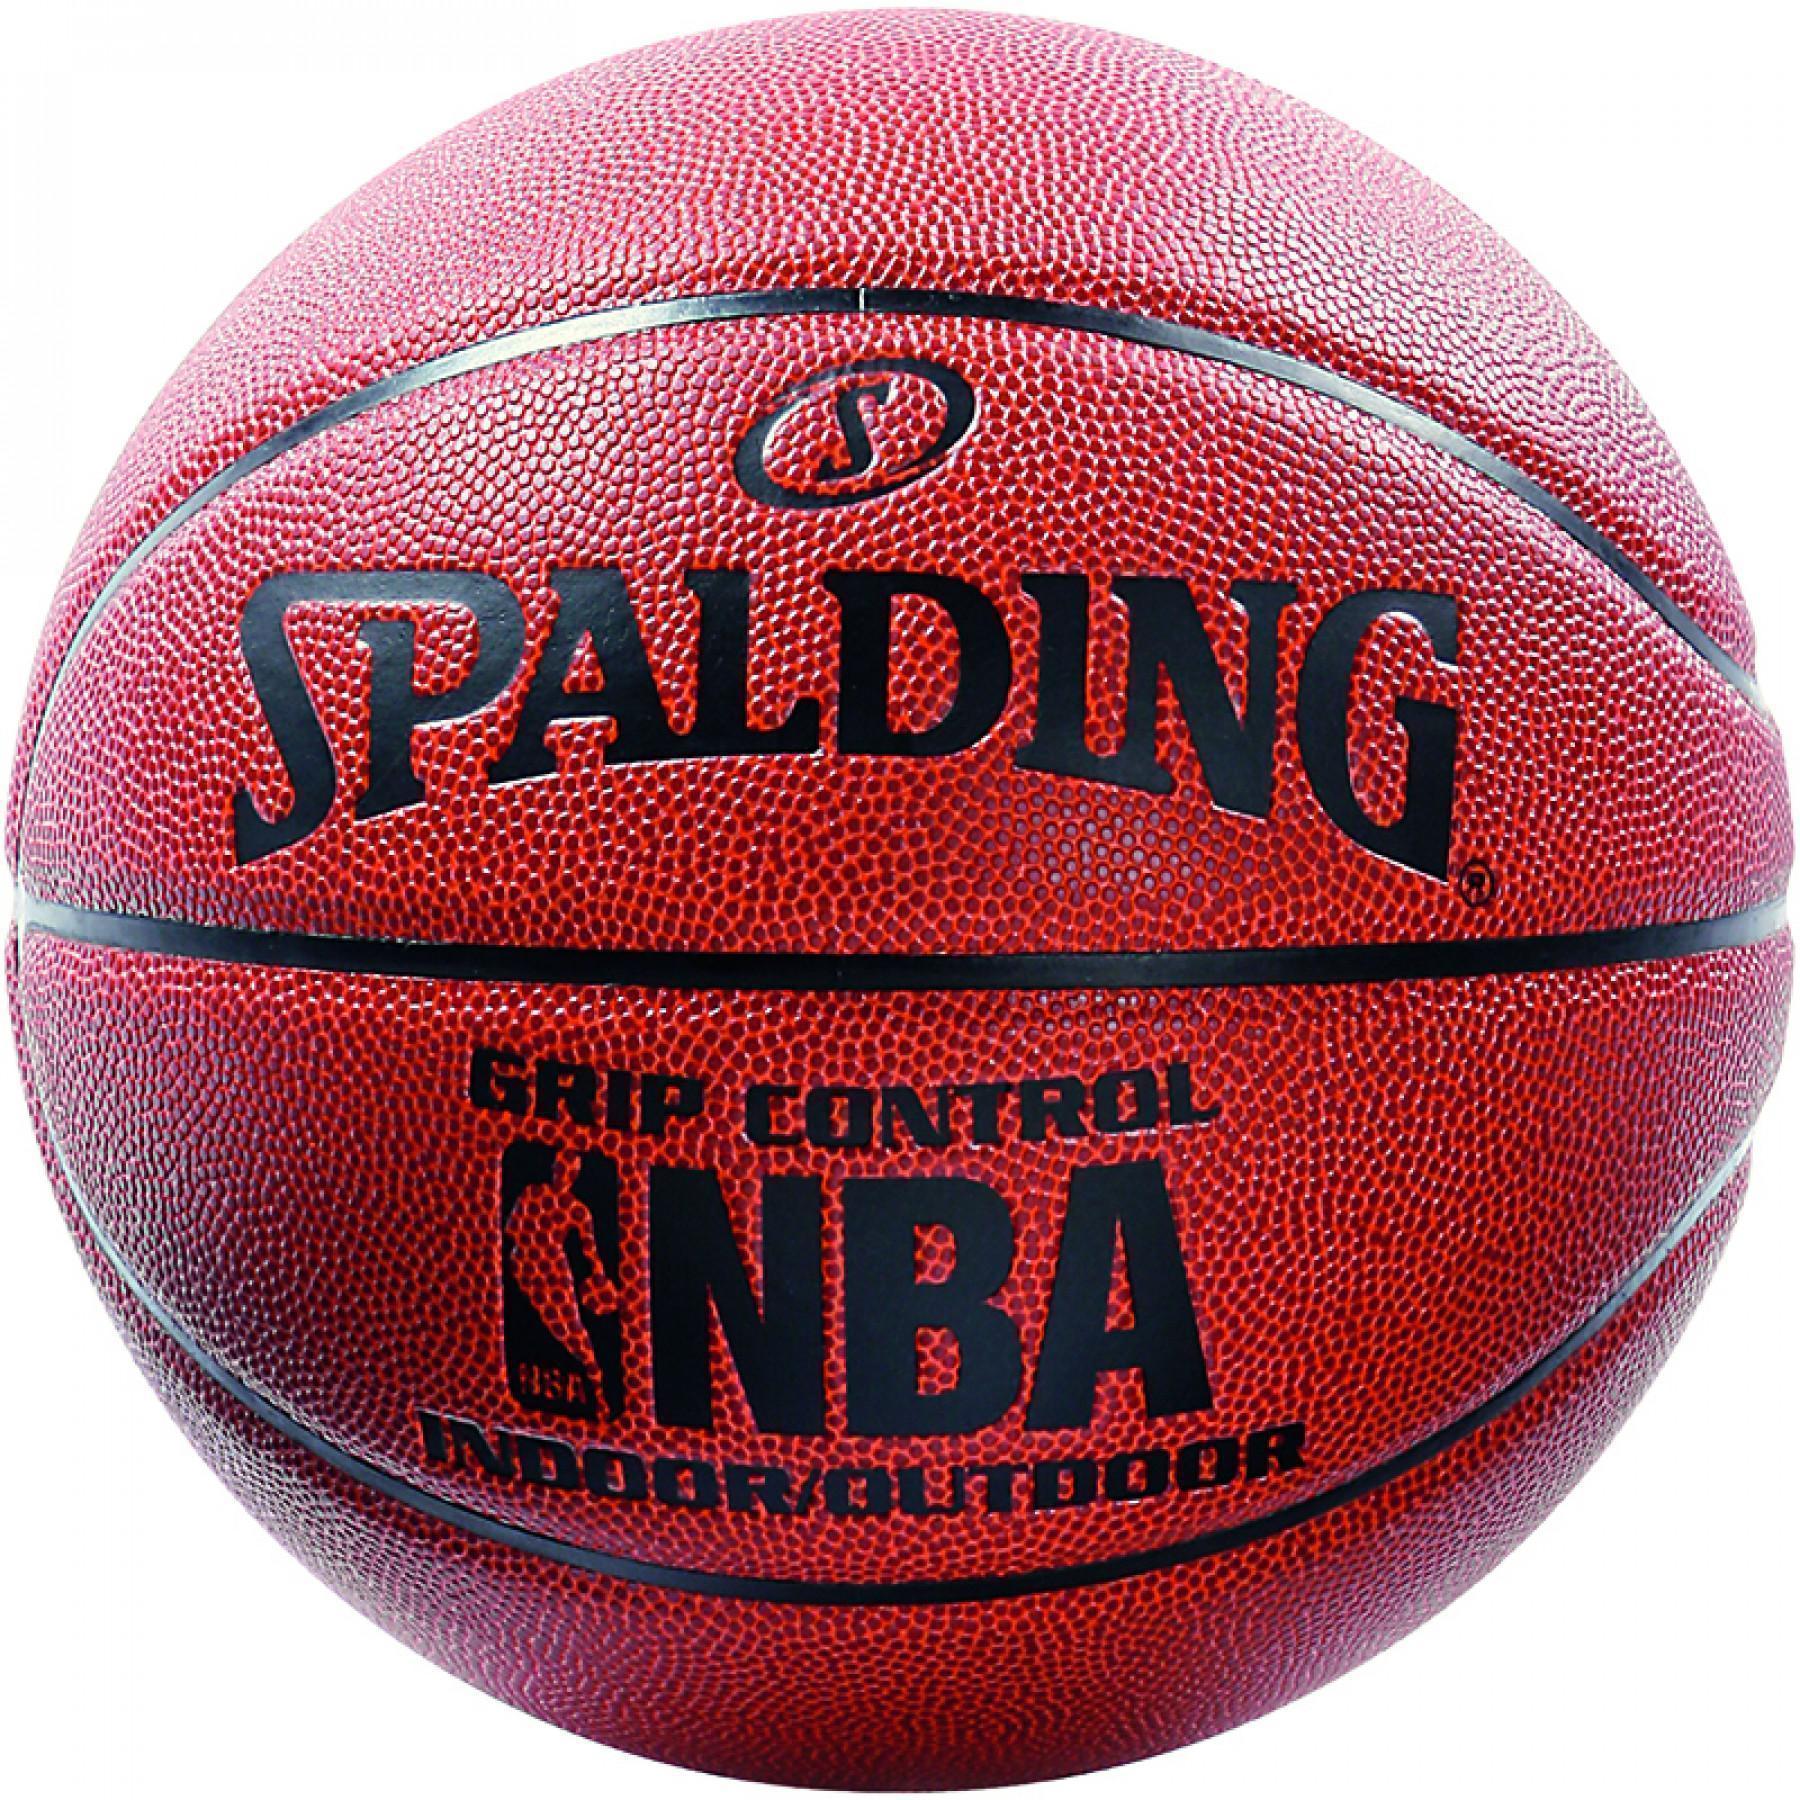 Ballong Spalding NBA Grip Control in/out orange